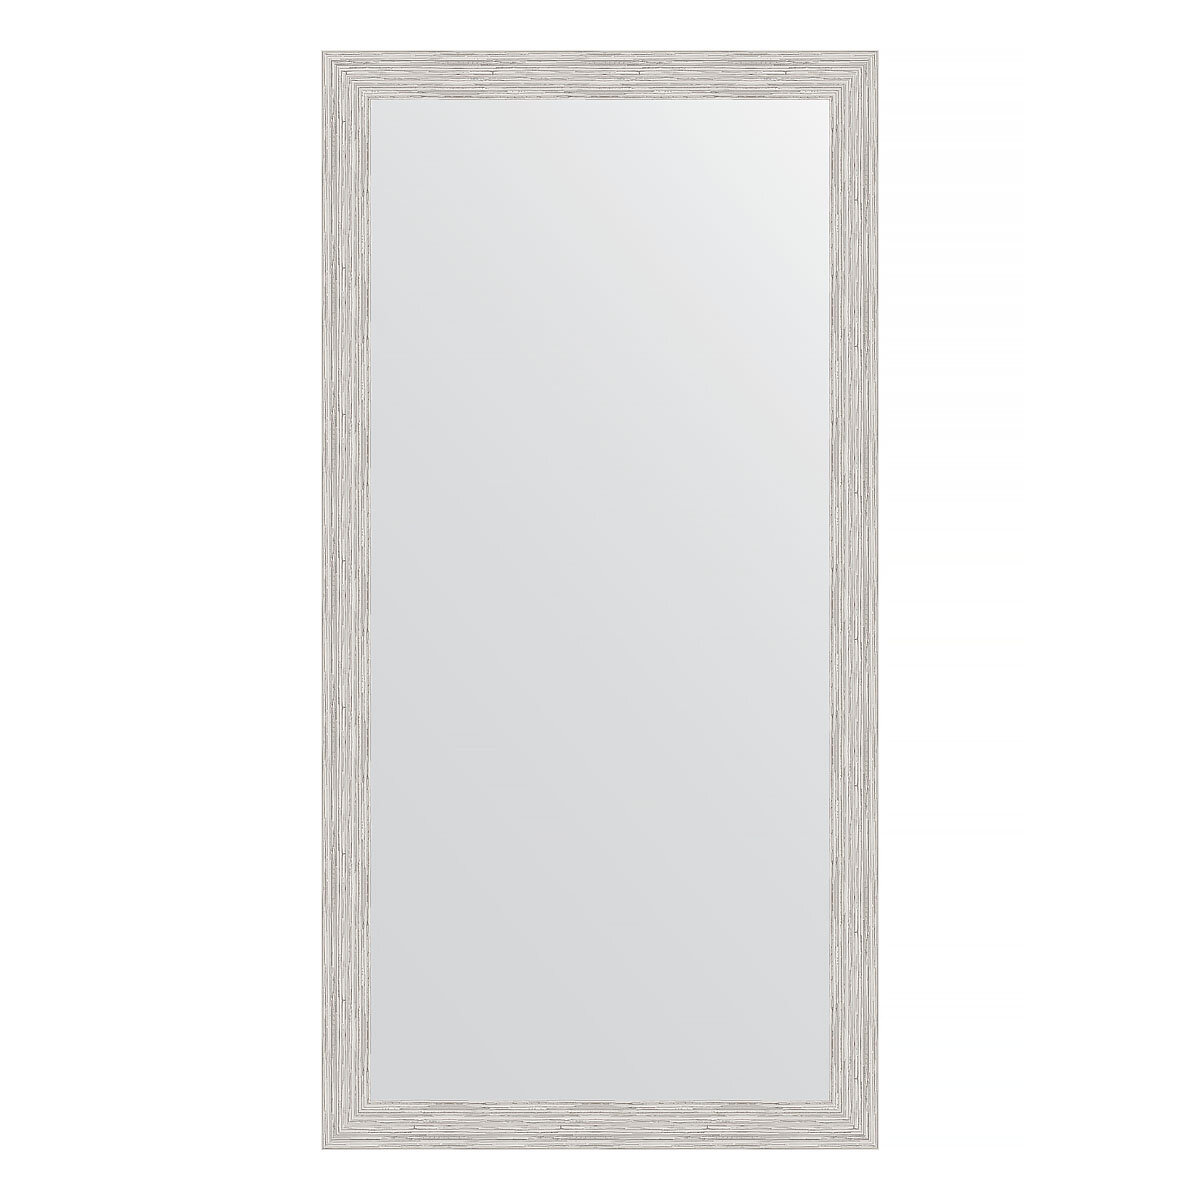 Зеркало настенное EVOFORM в багетной раме серебряный дождь, 51х101 см, для гостиной, прихожей, кабинета, спальни и ванной комнаты, BY 3069